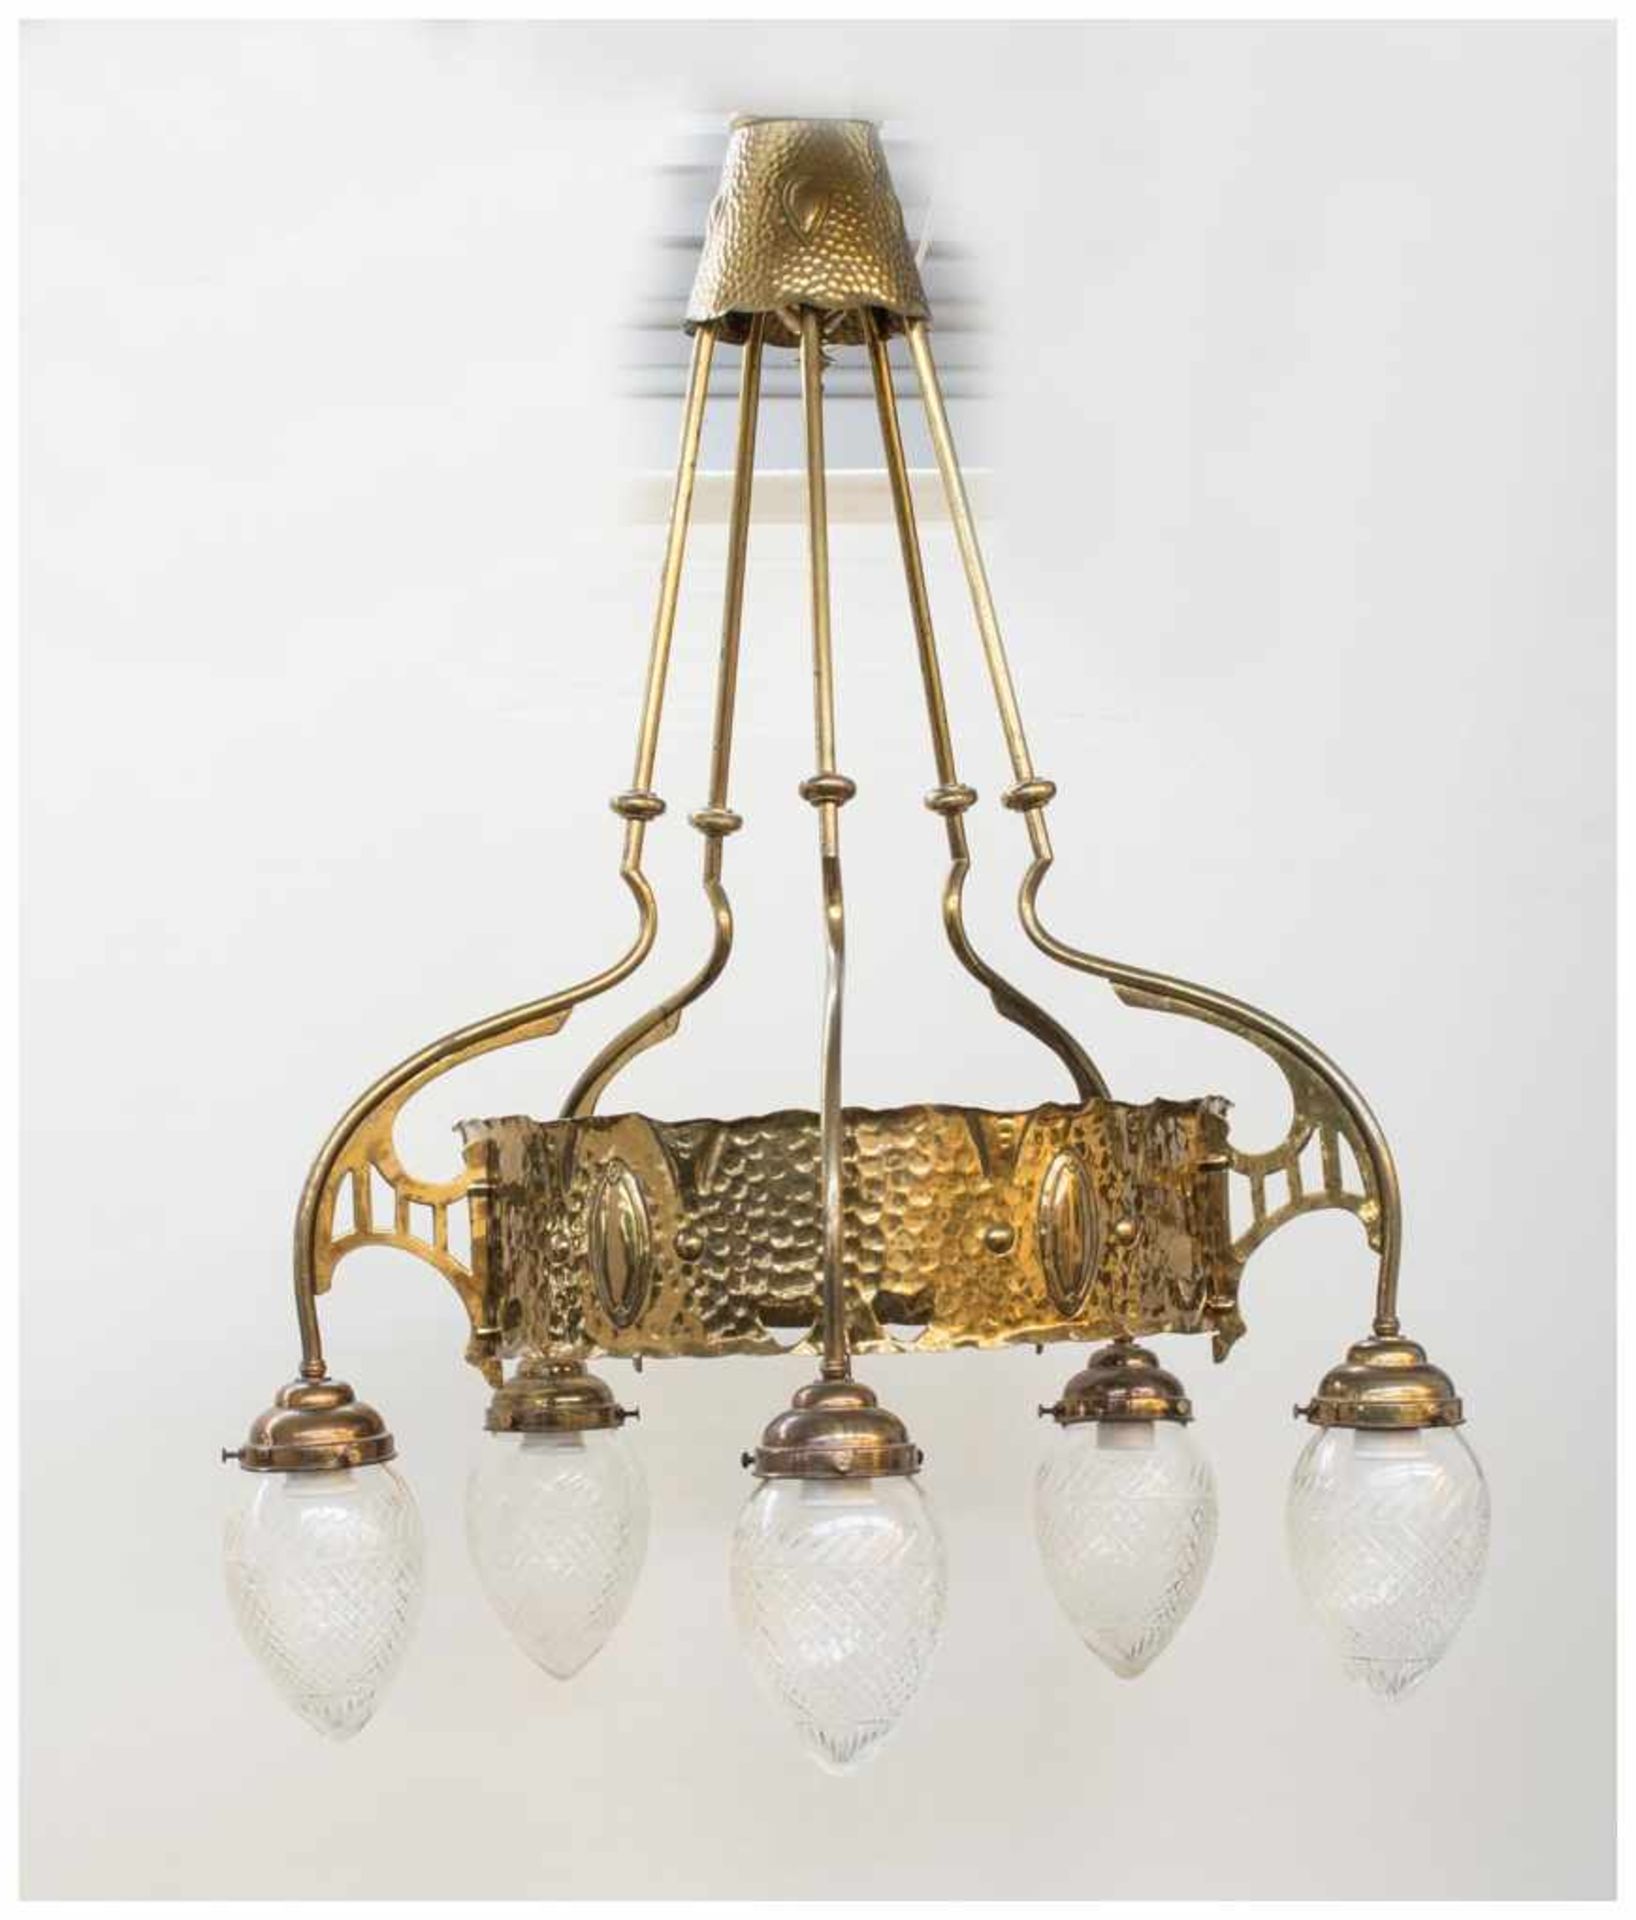 Jugendstil Deckenlampe um 1900, Messing getrieben mit schöner Jugendstilornamentik, 5 flammig mit